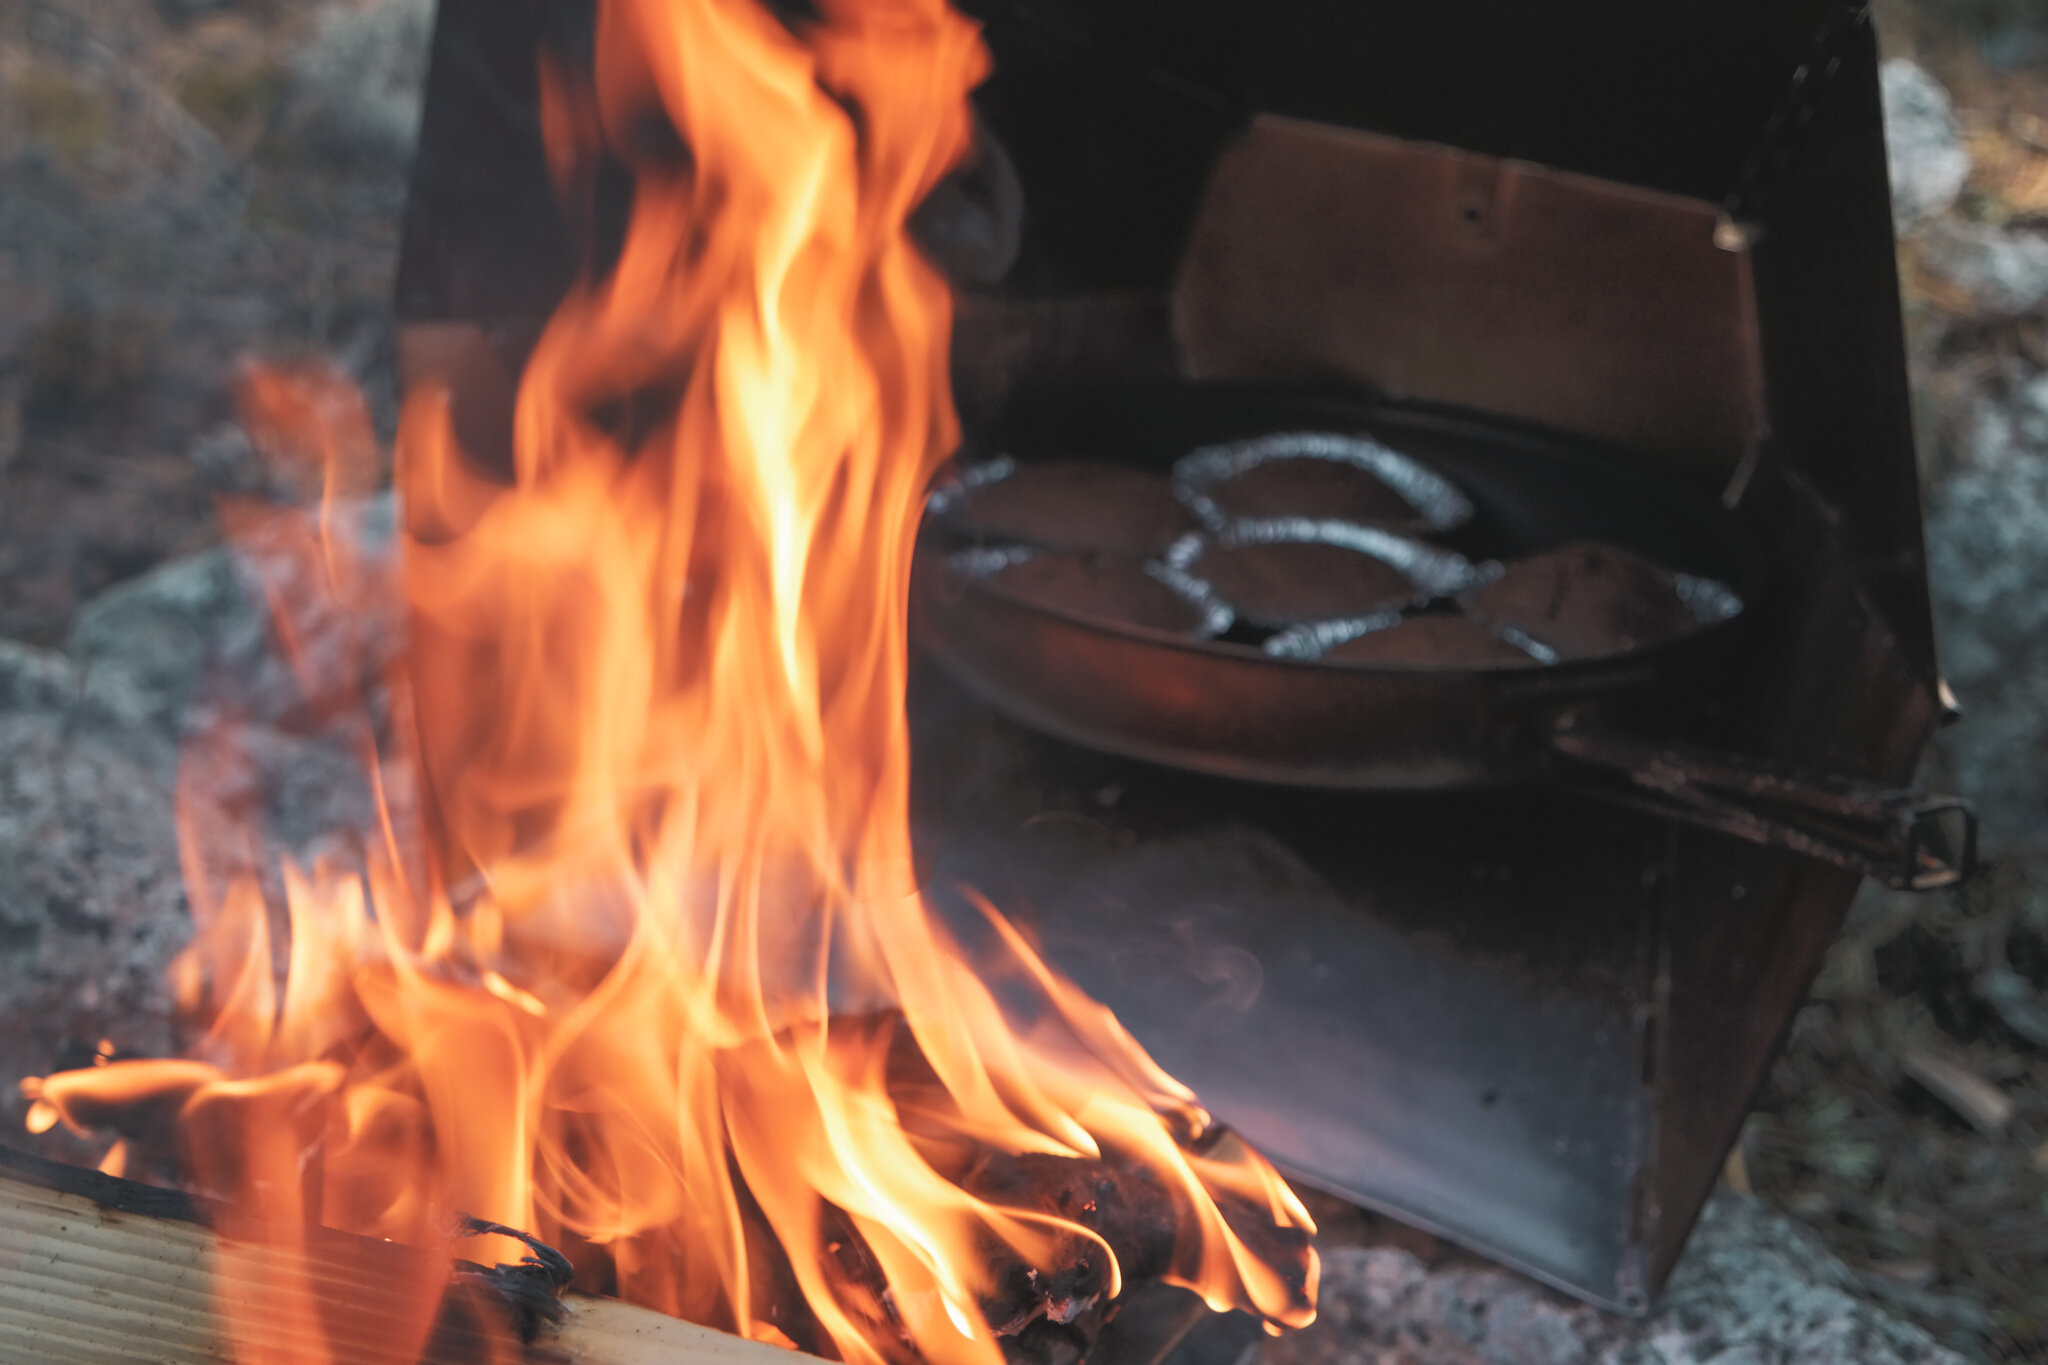 Baka muffins intill elden i friluftskök är enkelt och gott.